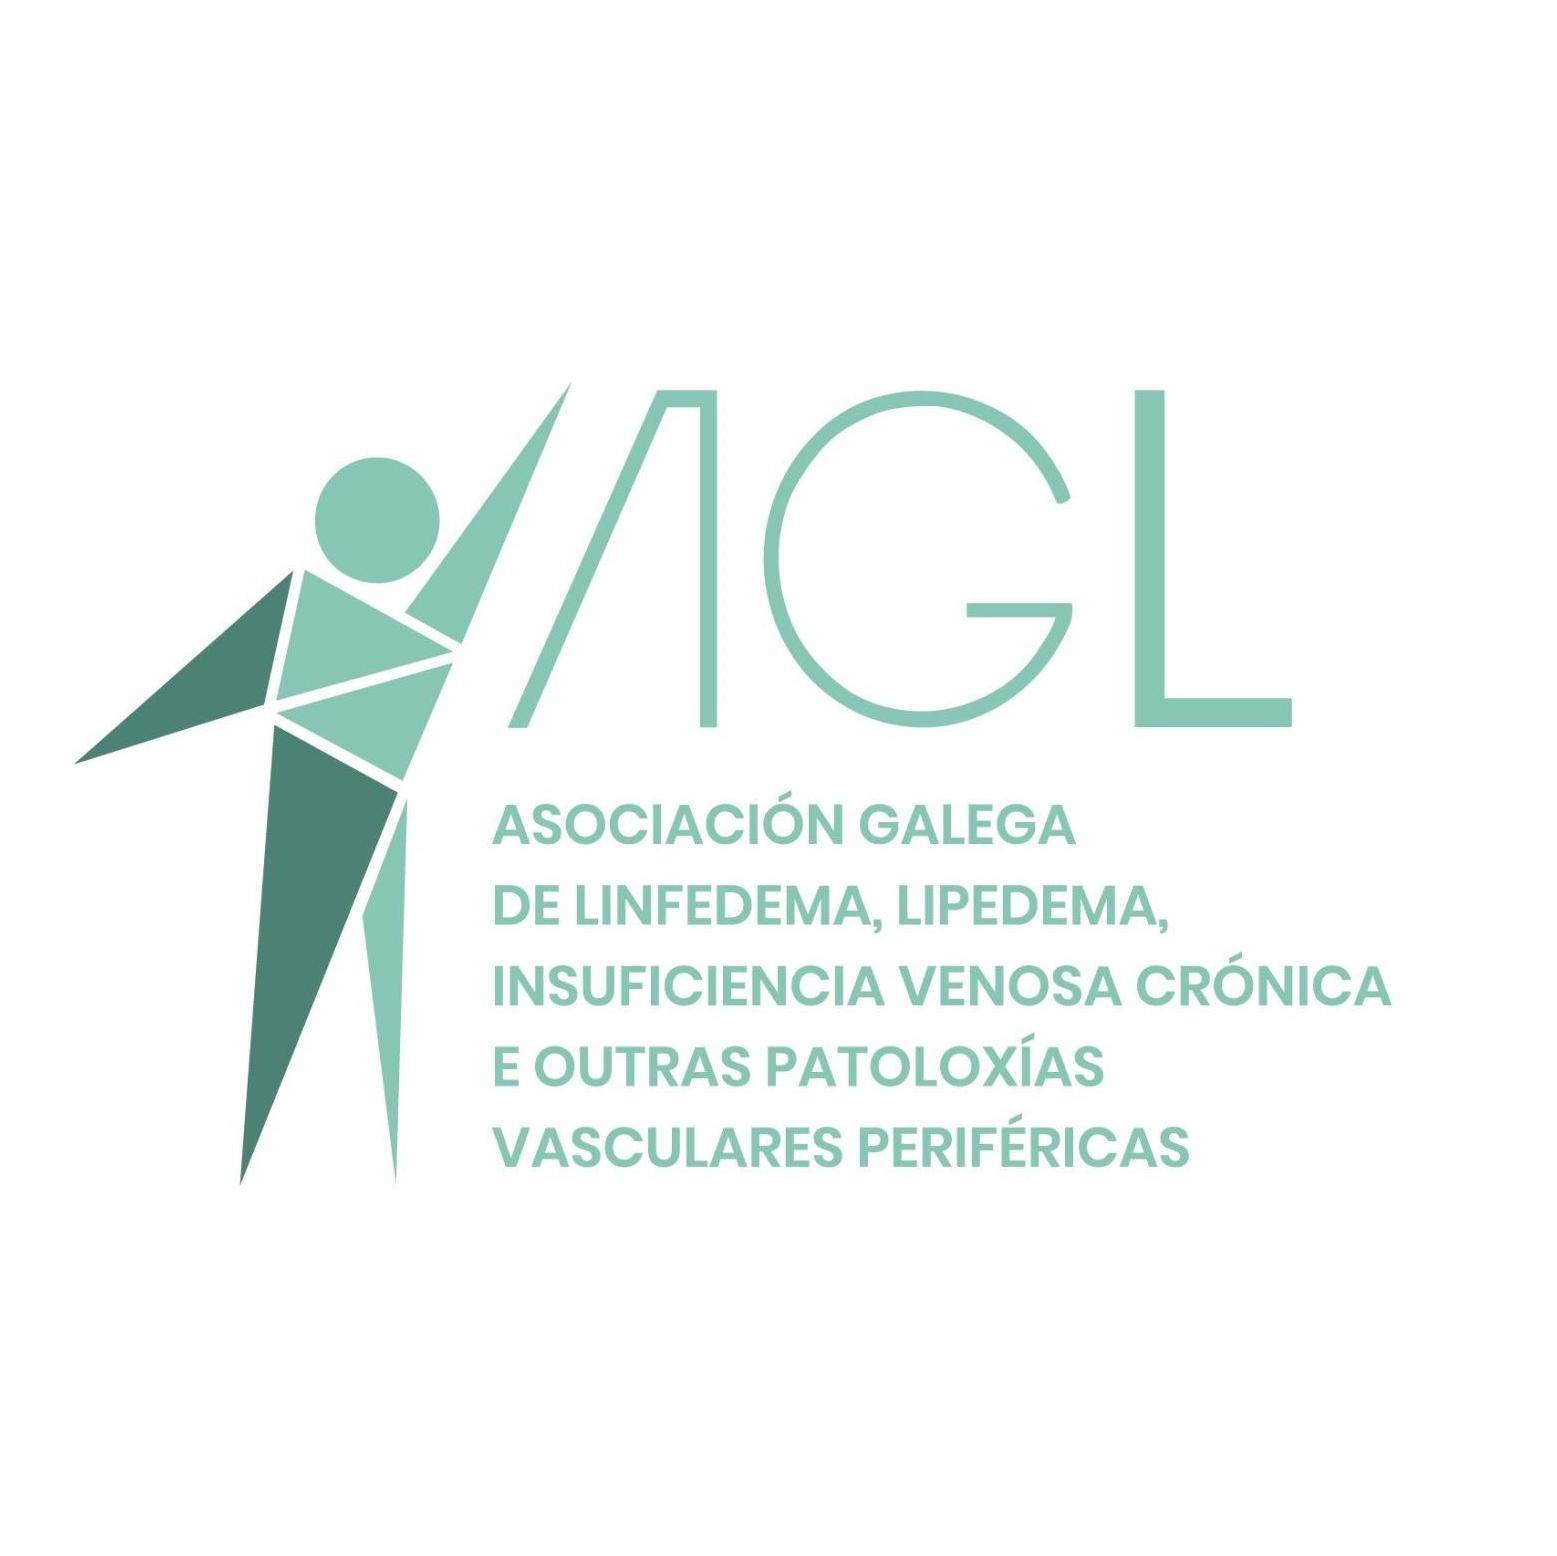 Asociación Galega de Linfedema, Lipedema, Insuficiencia Venosa Crónica Profile, news, ratings and communication